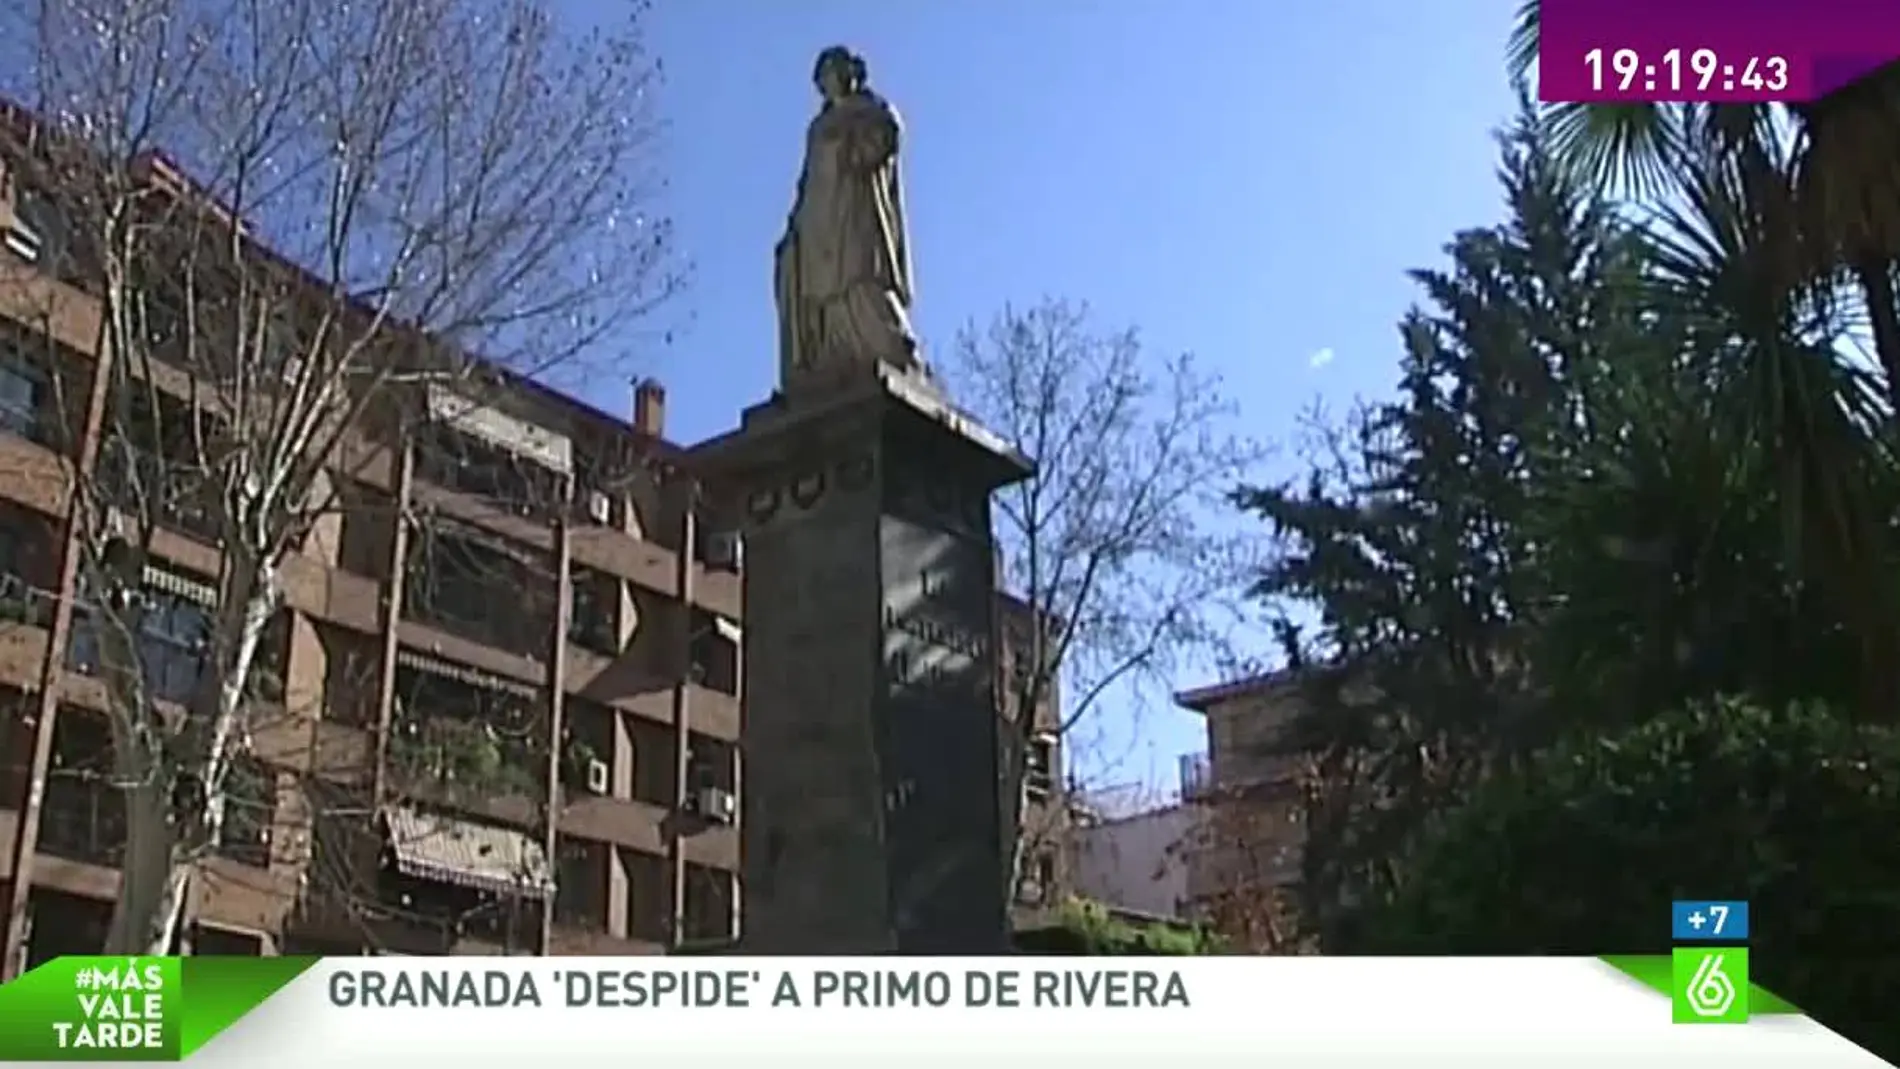 Granda 'despide' a Primo de Rivera